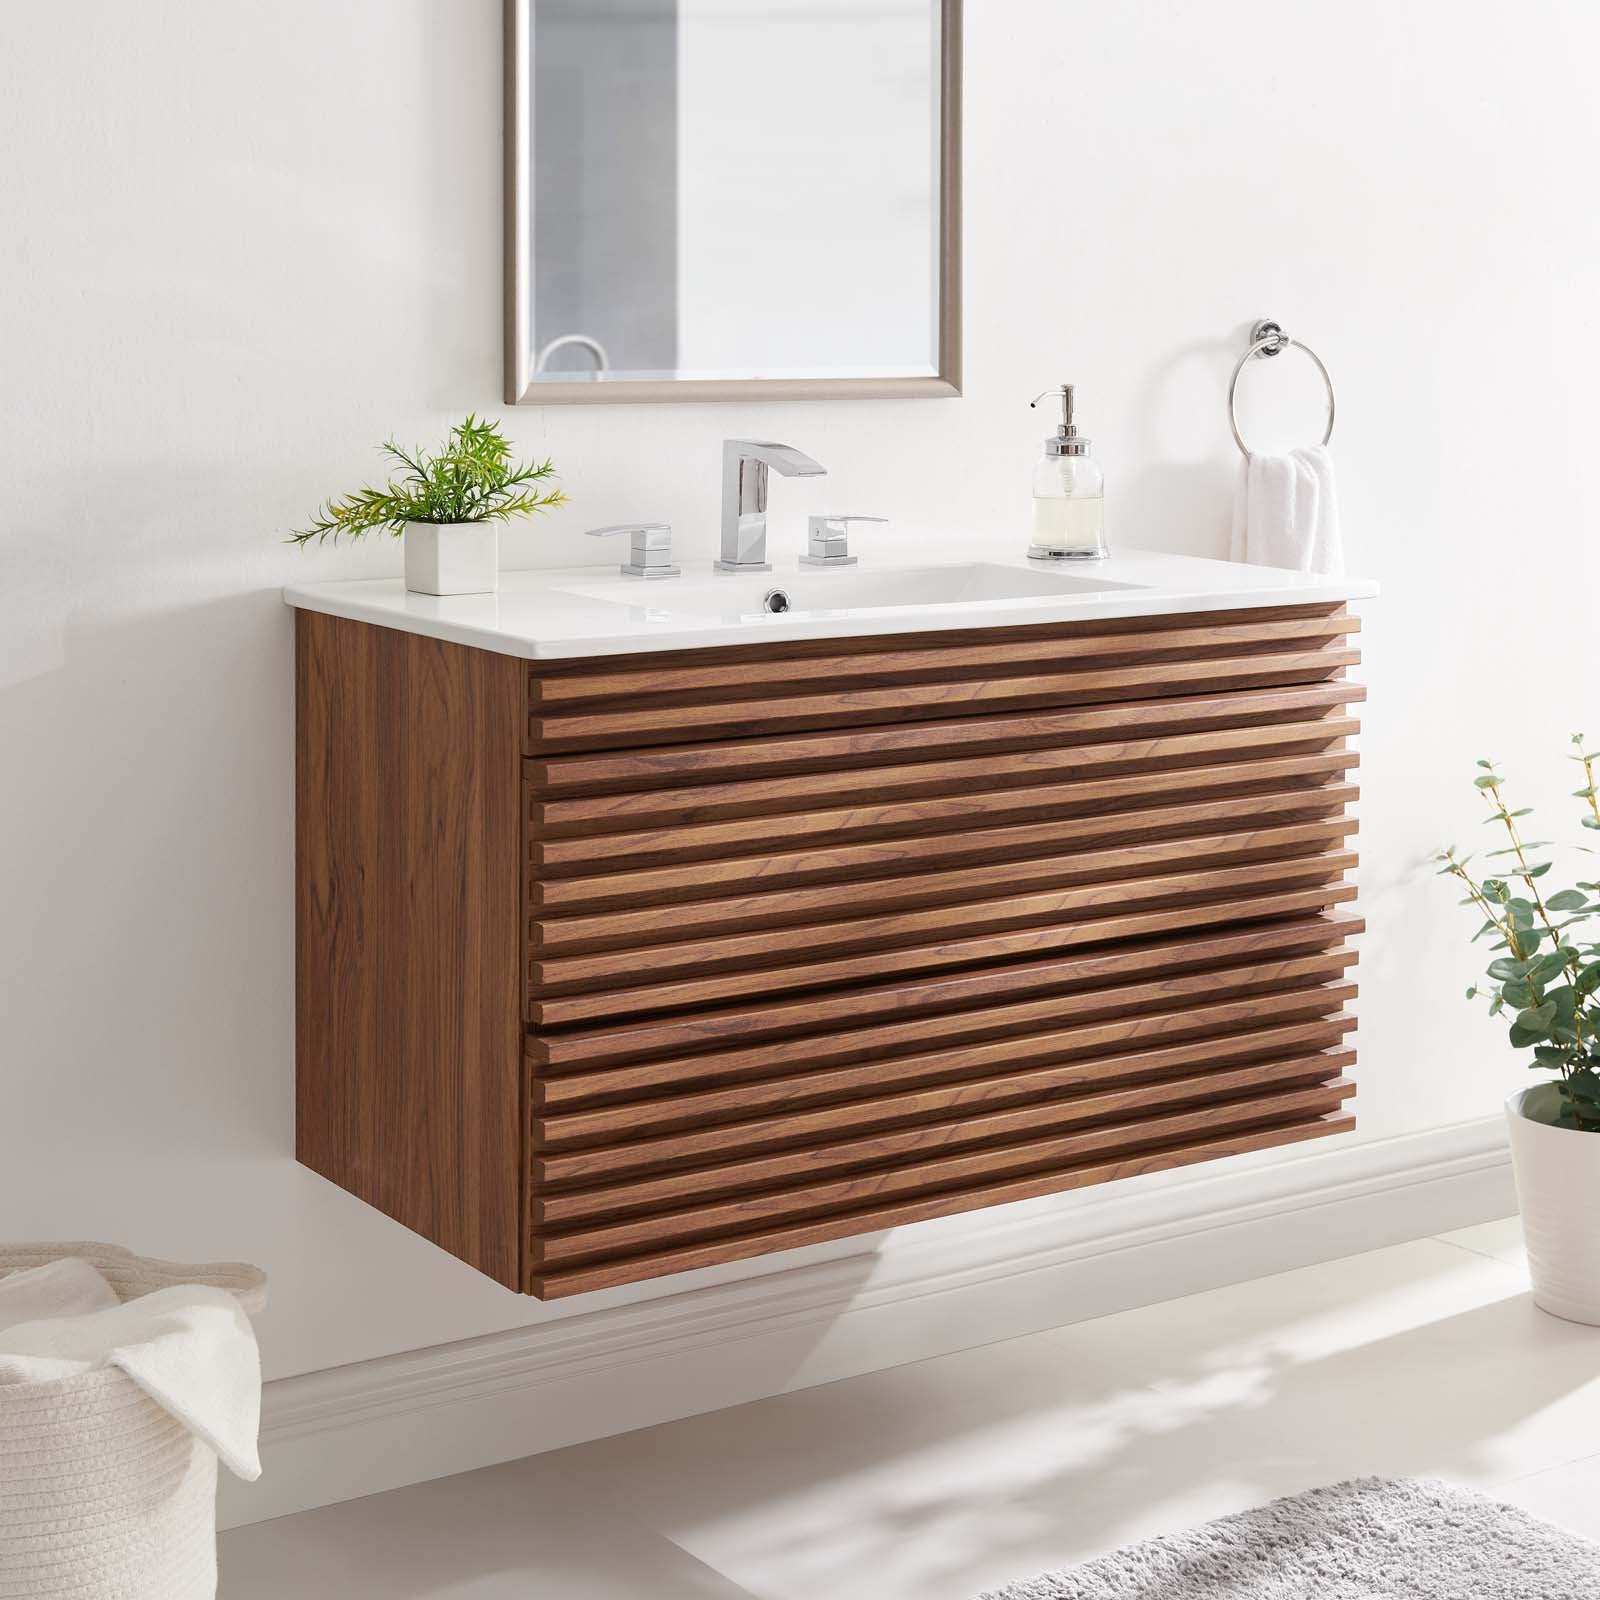 Render 36" Wall-Mount Bathroom Vanity - East Shore Modern Home Furnishings